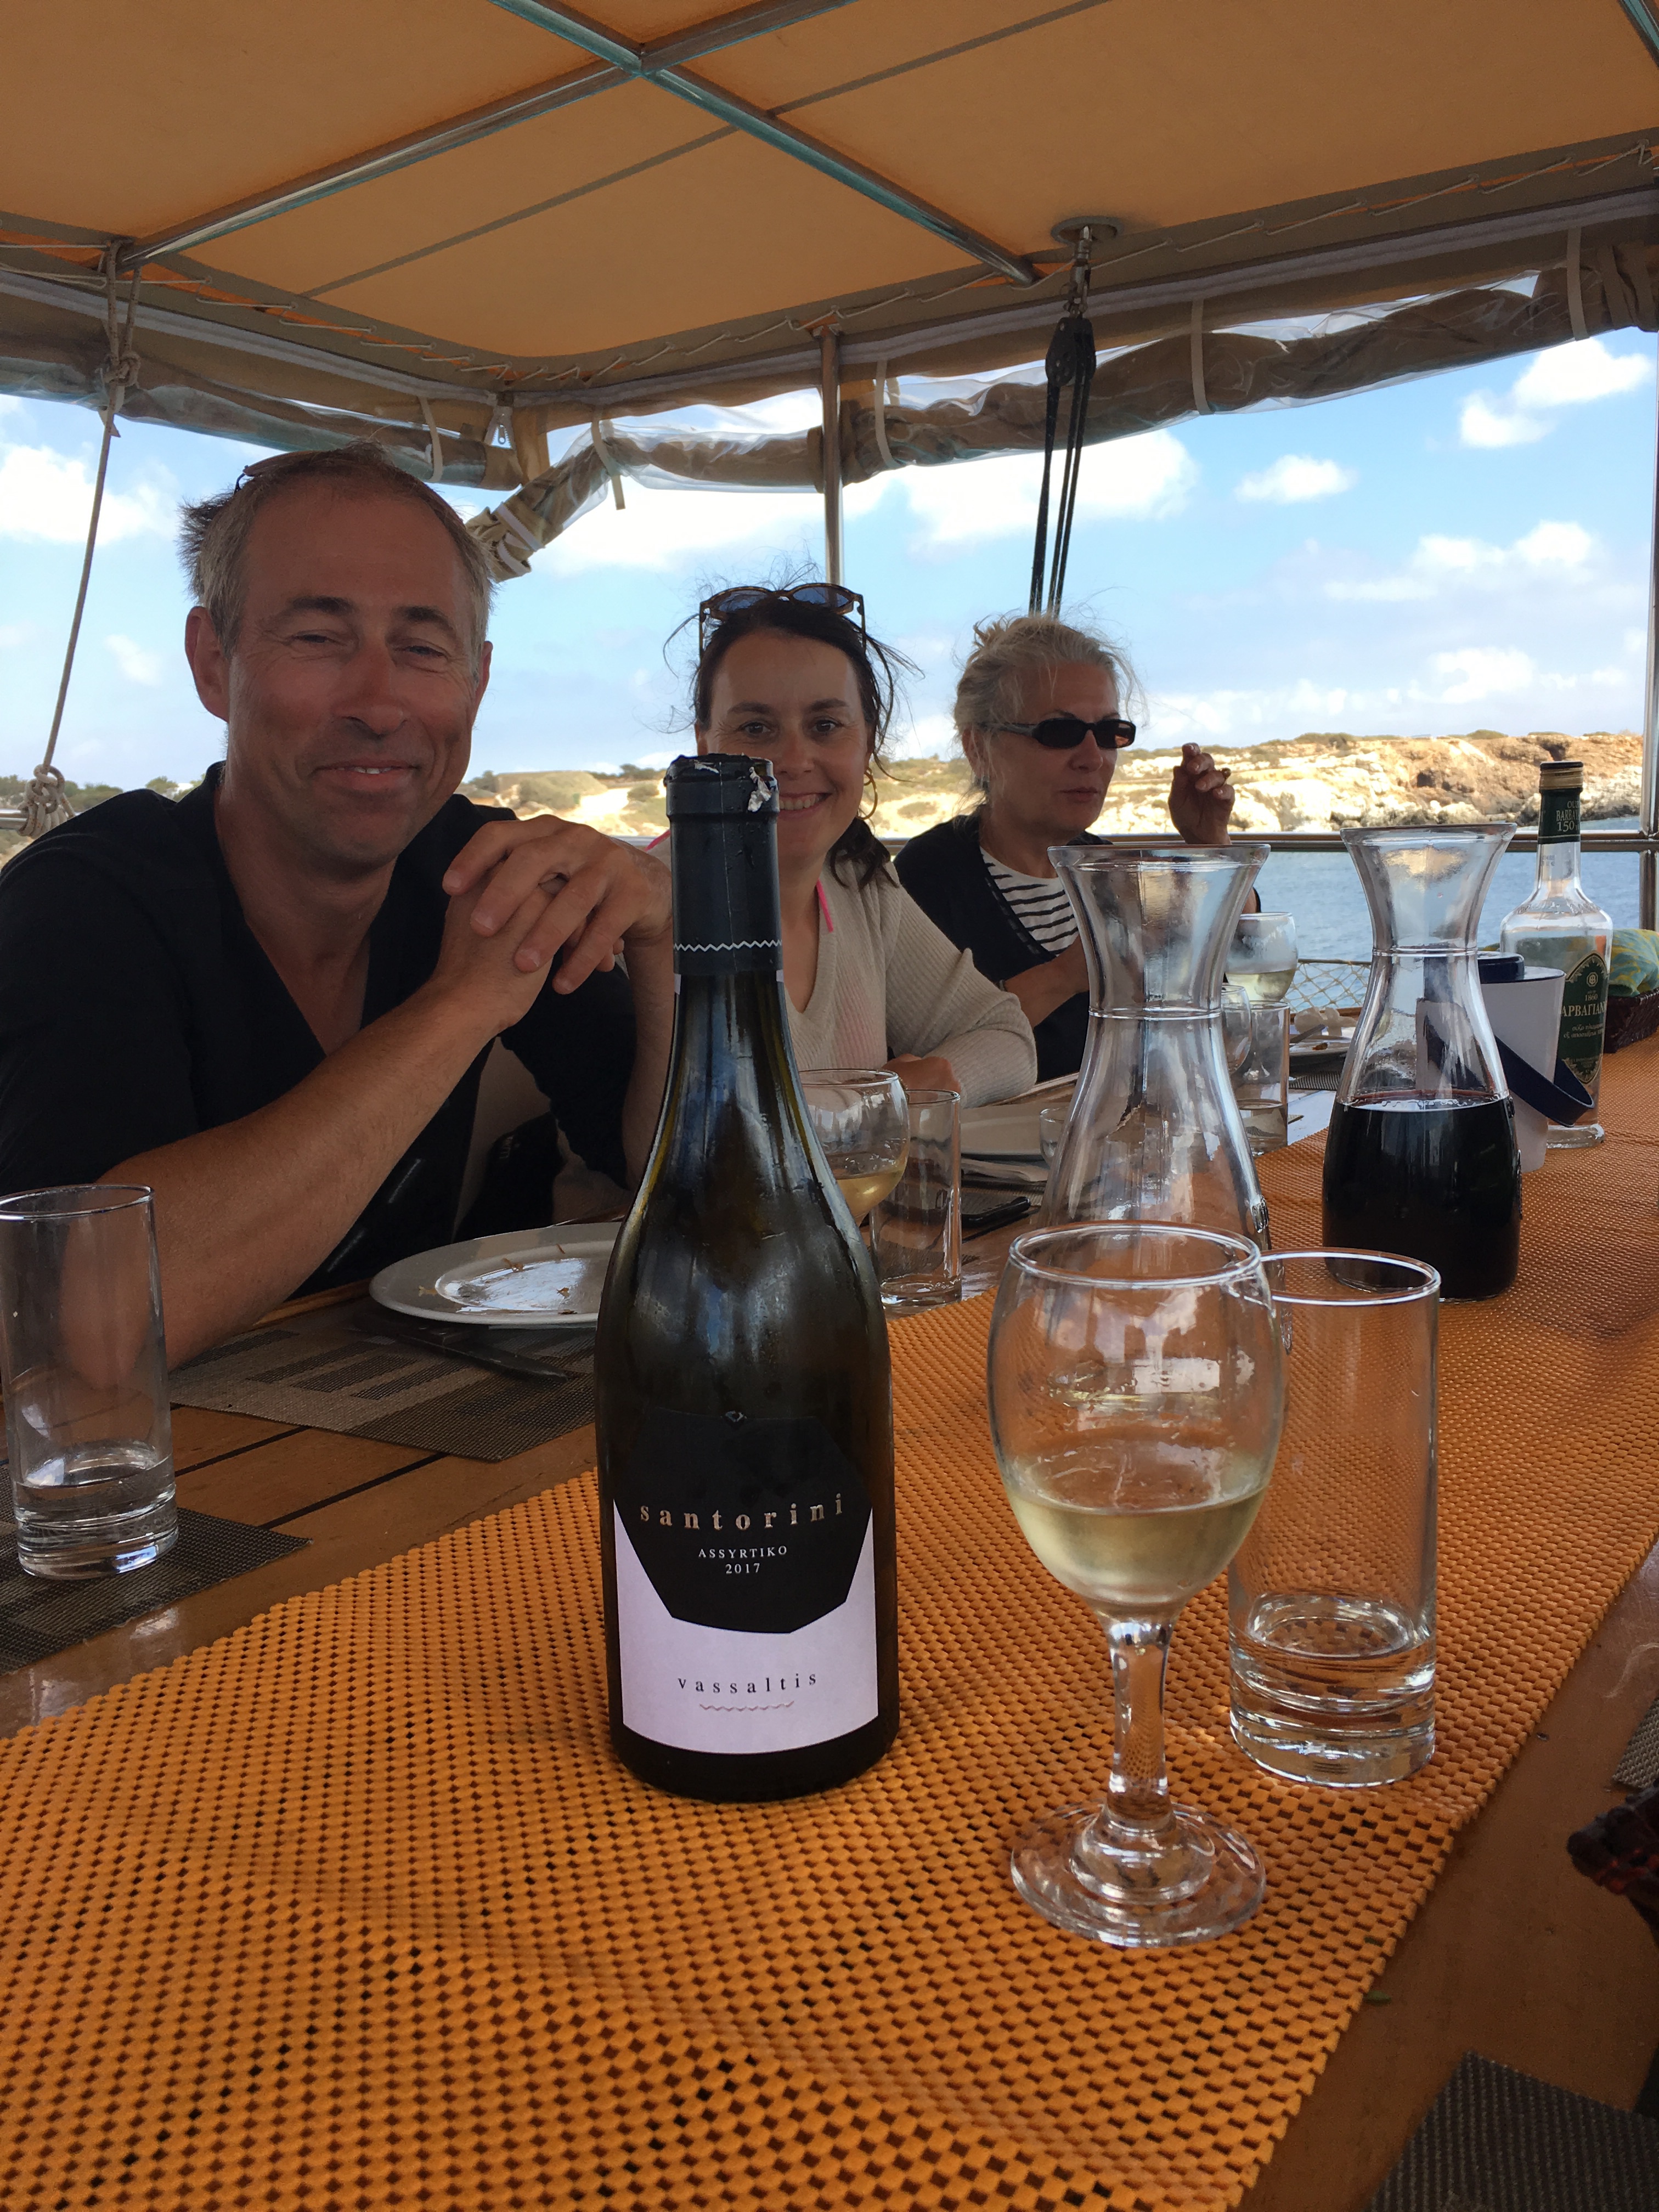 Vassaltis white wine on board our yacht